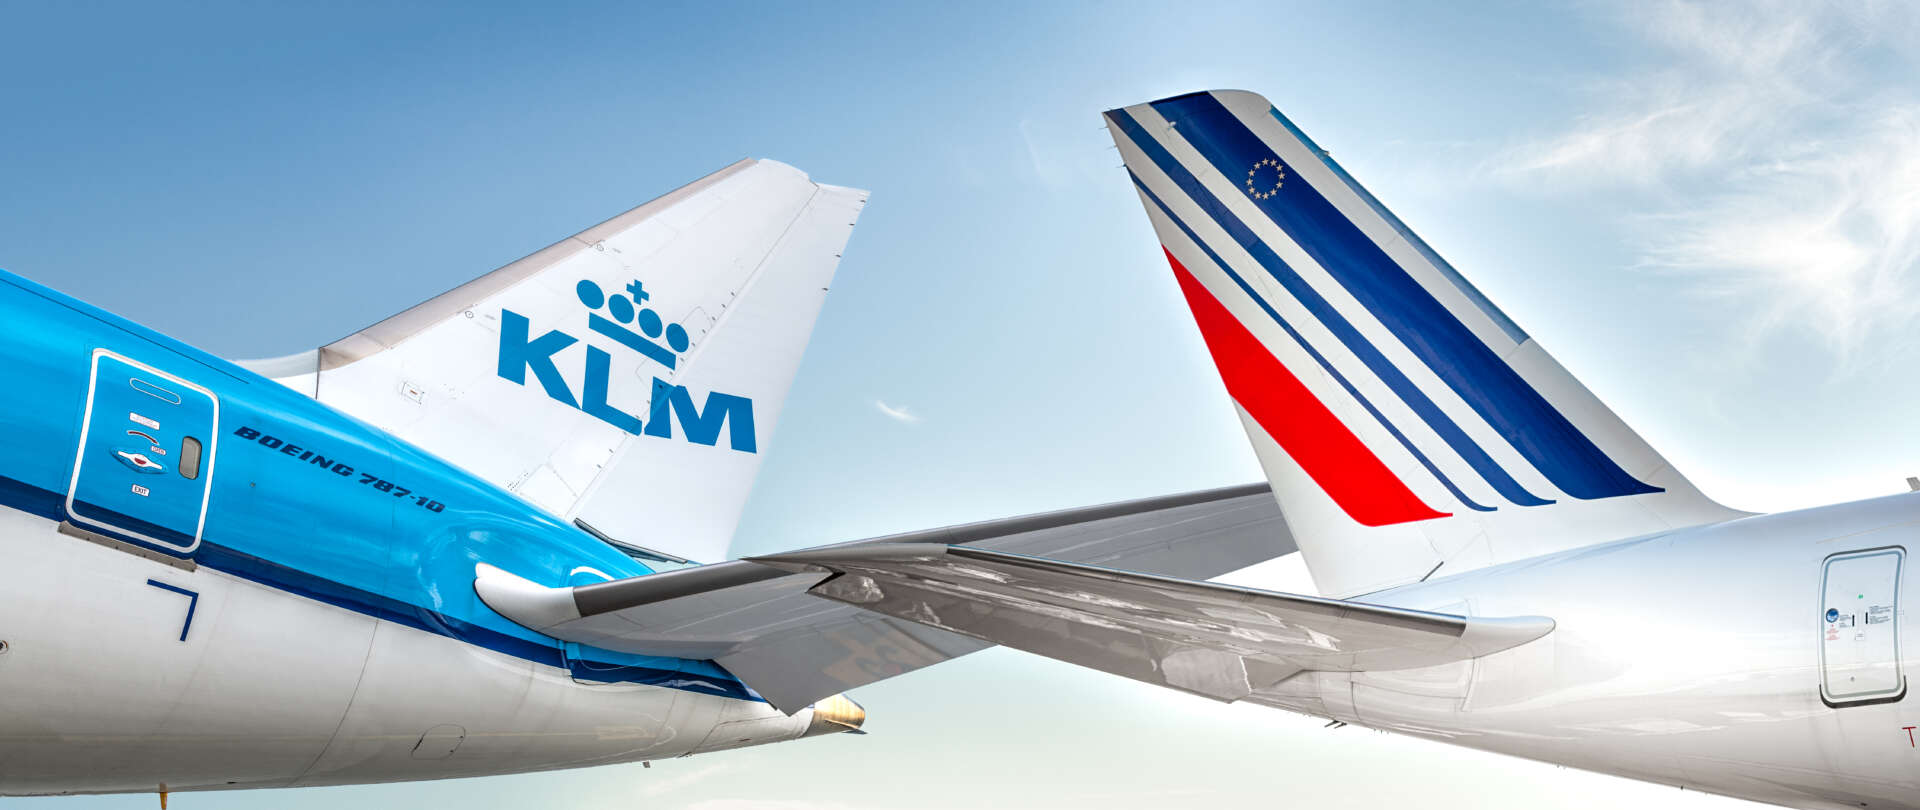 エールフランス・KLM航空マイレージプログラム「フライング・ブルー」提携のお知らせ